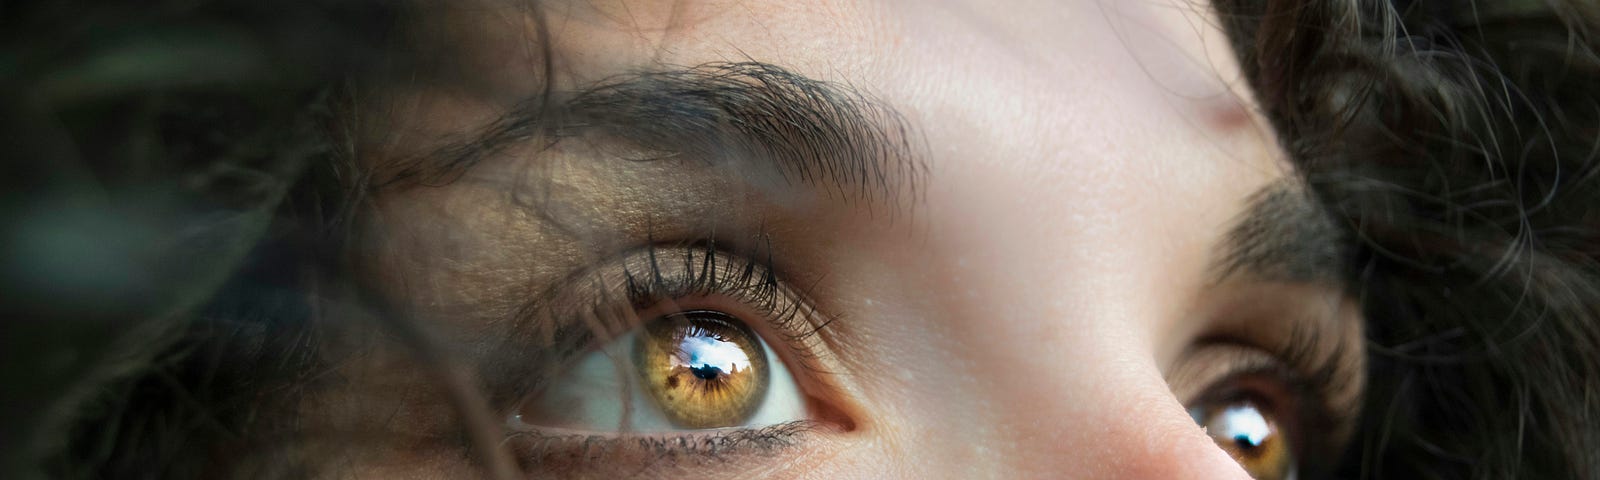 Close-up of human eyes